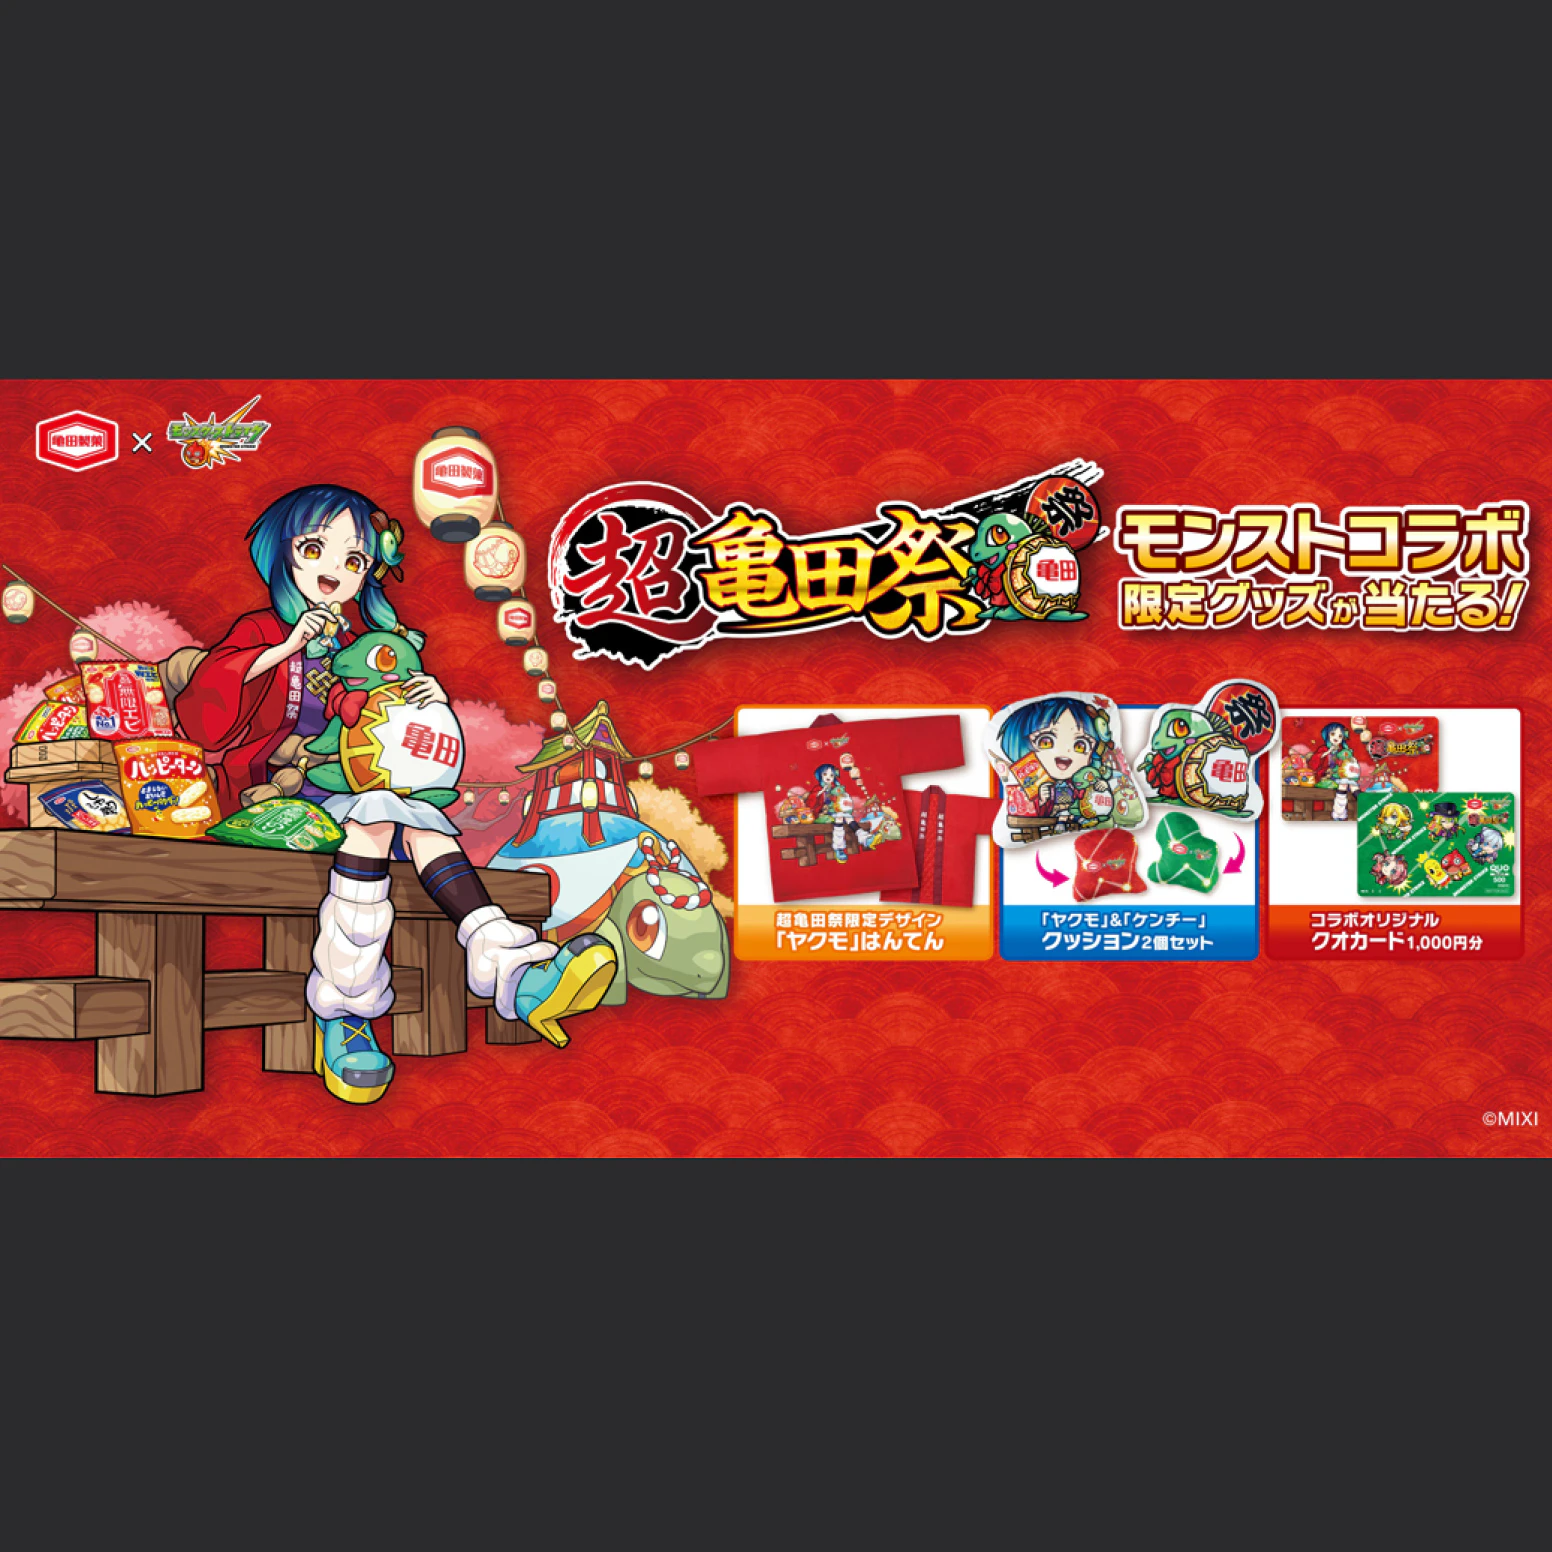 「亀田製菓×モンスターストライク」キャンペーンのサムネイル